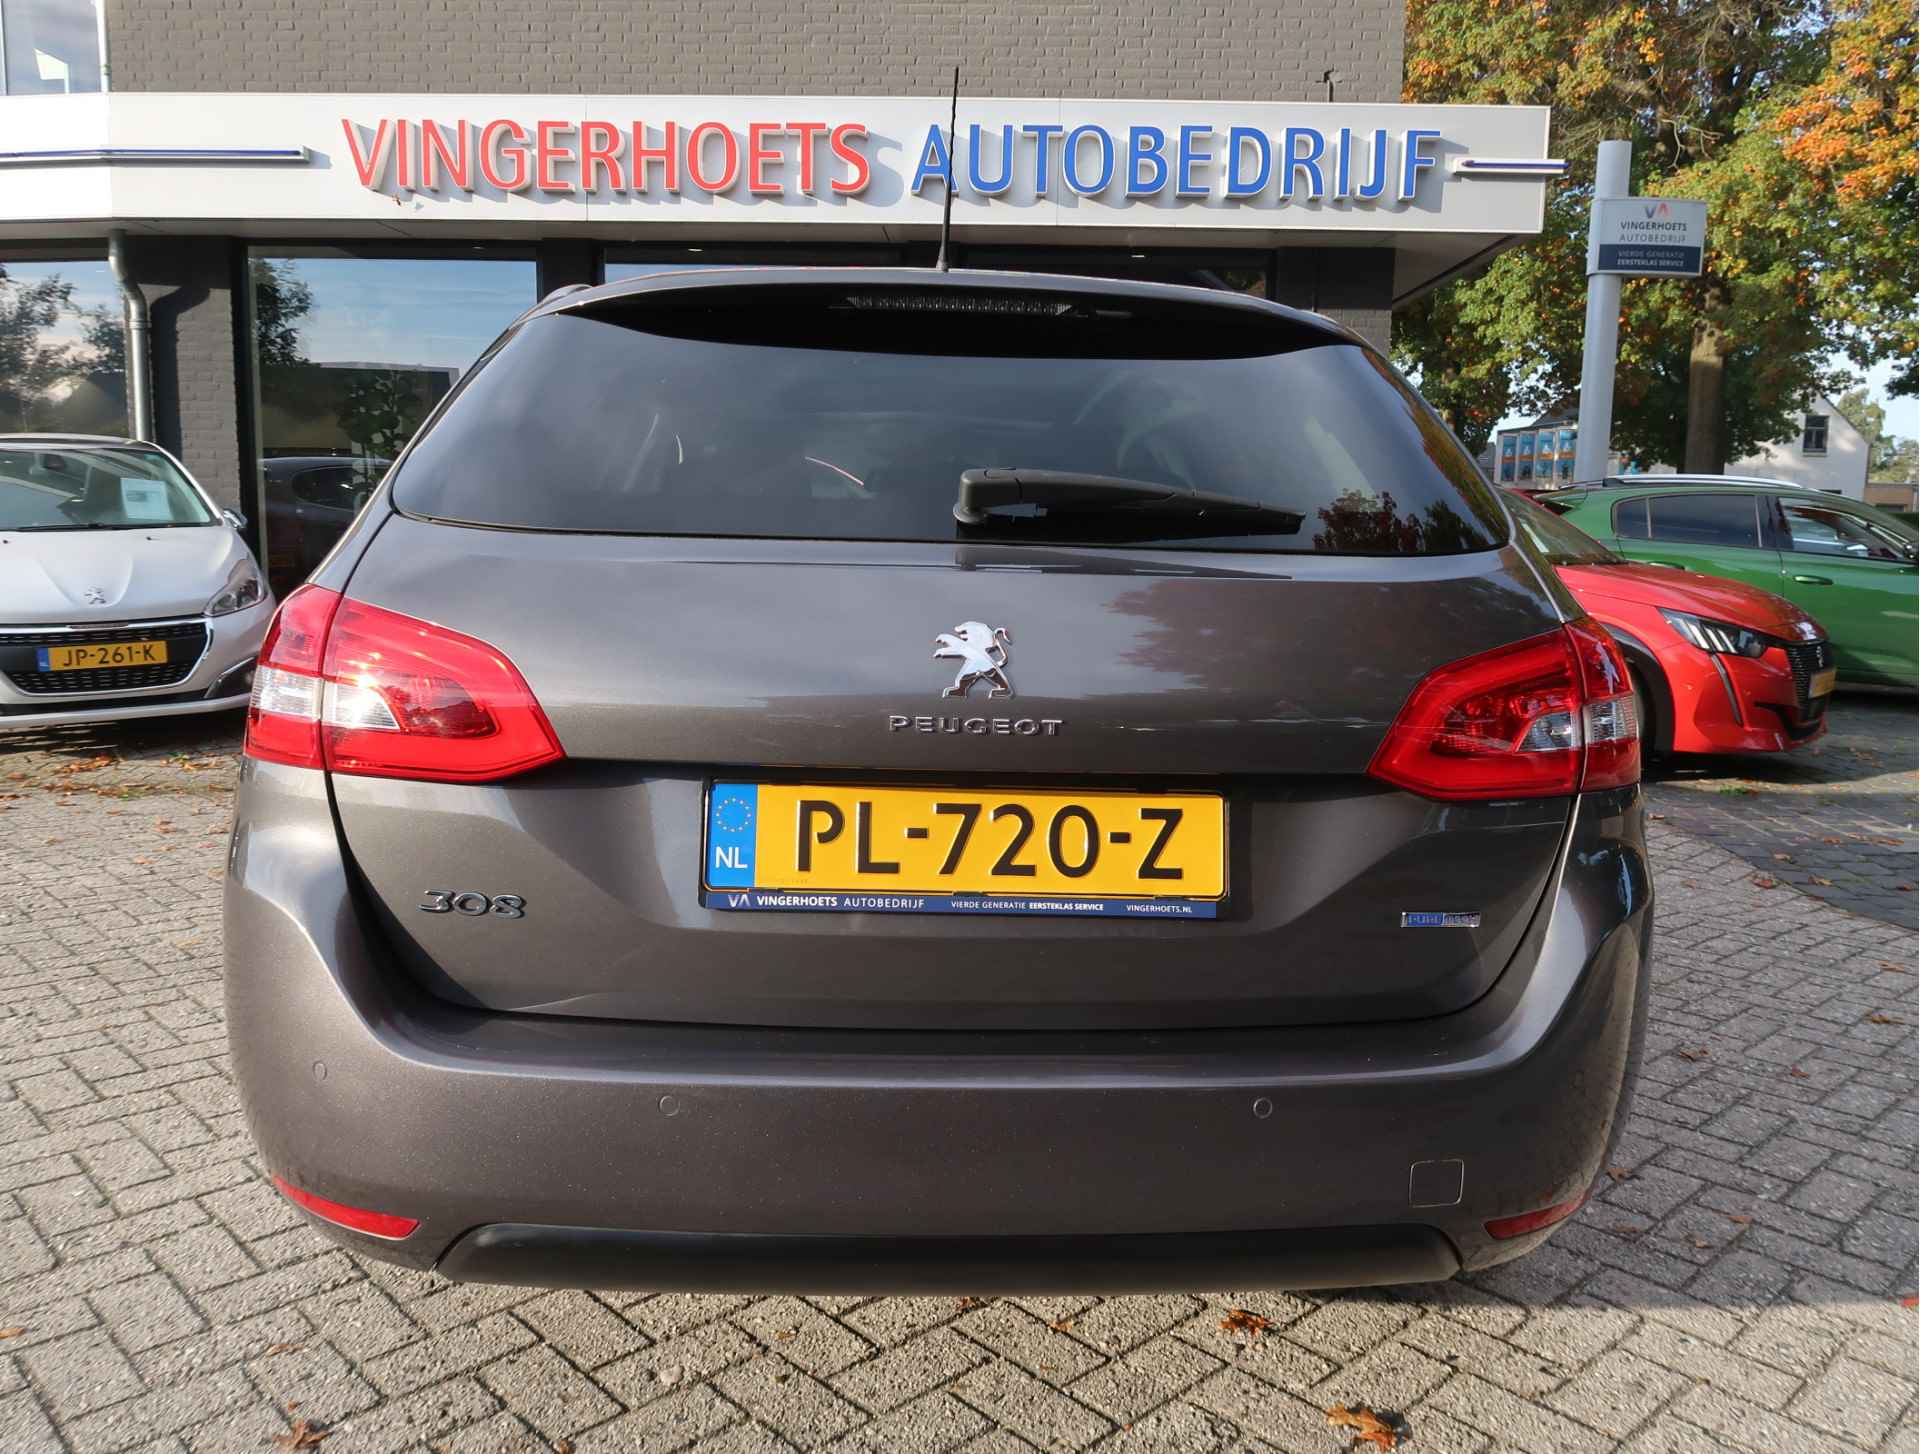 Peugeot 308 SW 110 PK Benzine * Panoramadak * Navigatie * L.M. Velgen * DAB+ Radio + CD * Cruise & Climate Control * Voor en achter Parkeersensoren* Vierseizoenenbanden * - 7/45